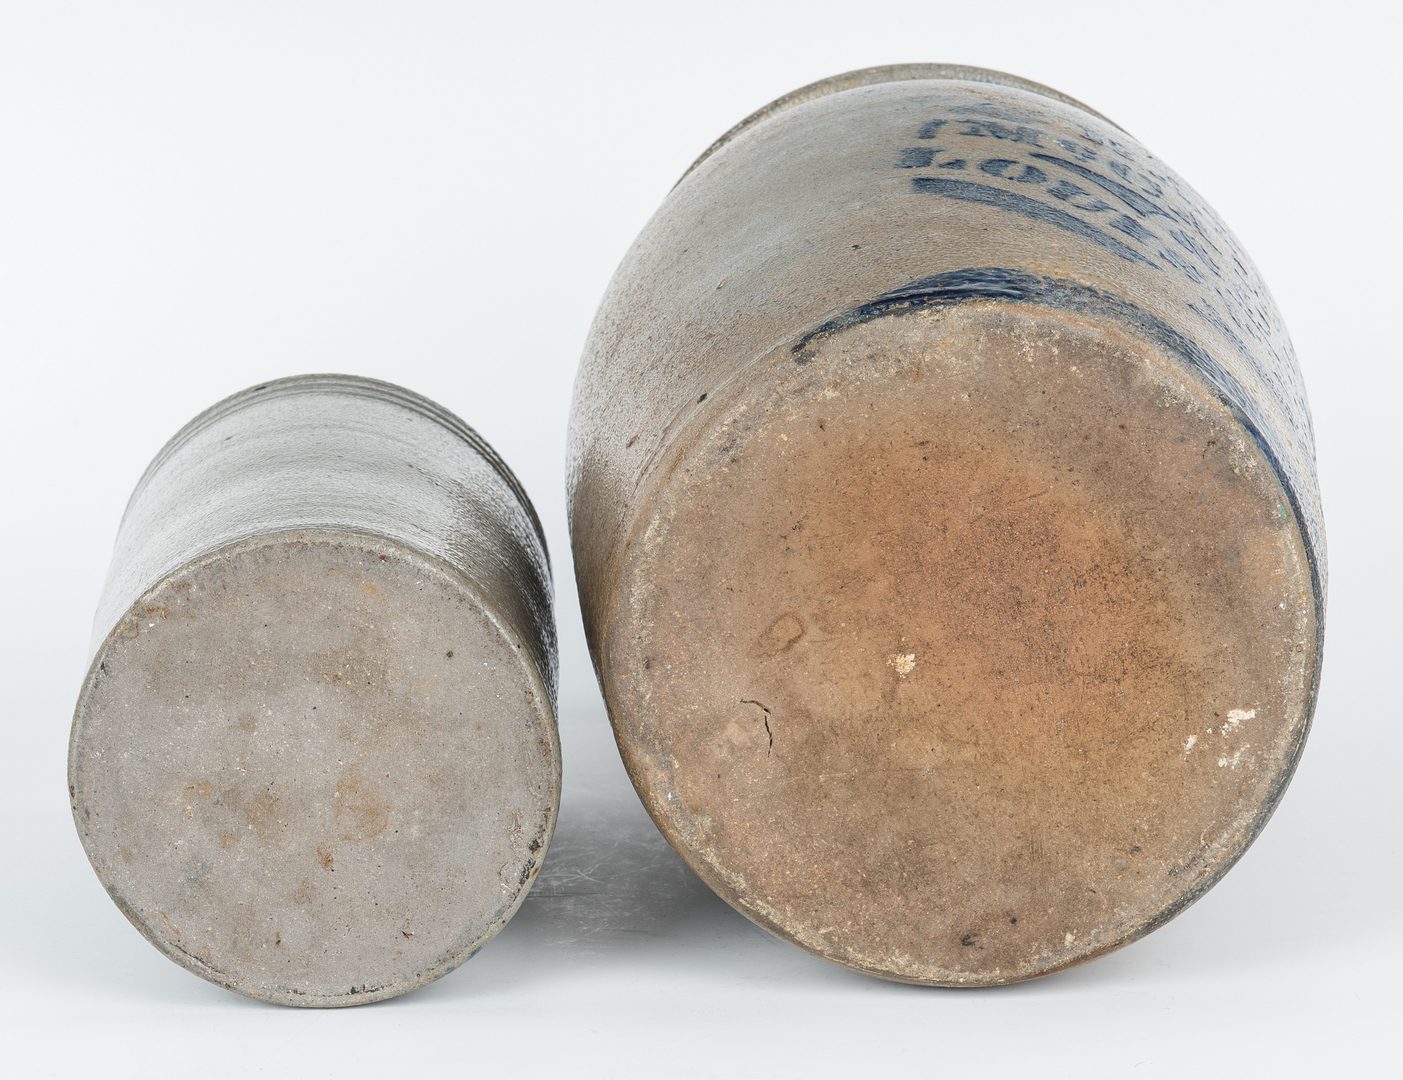 Lot 152: 2 Louisville Kentucky Stoneware Pottery Jars